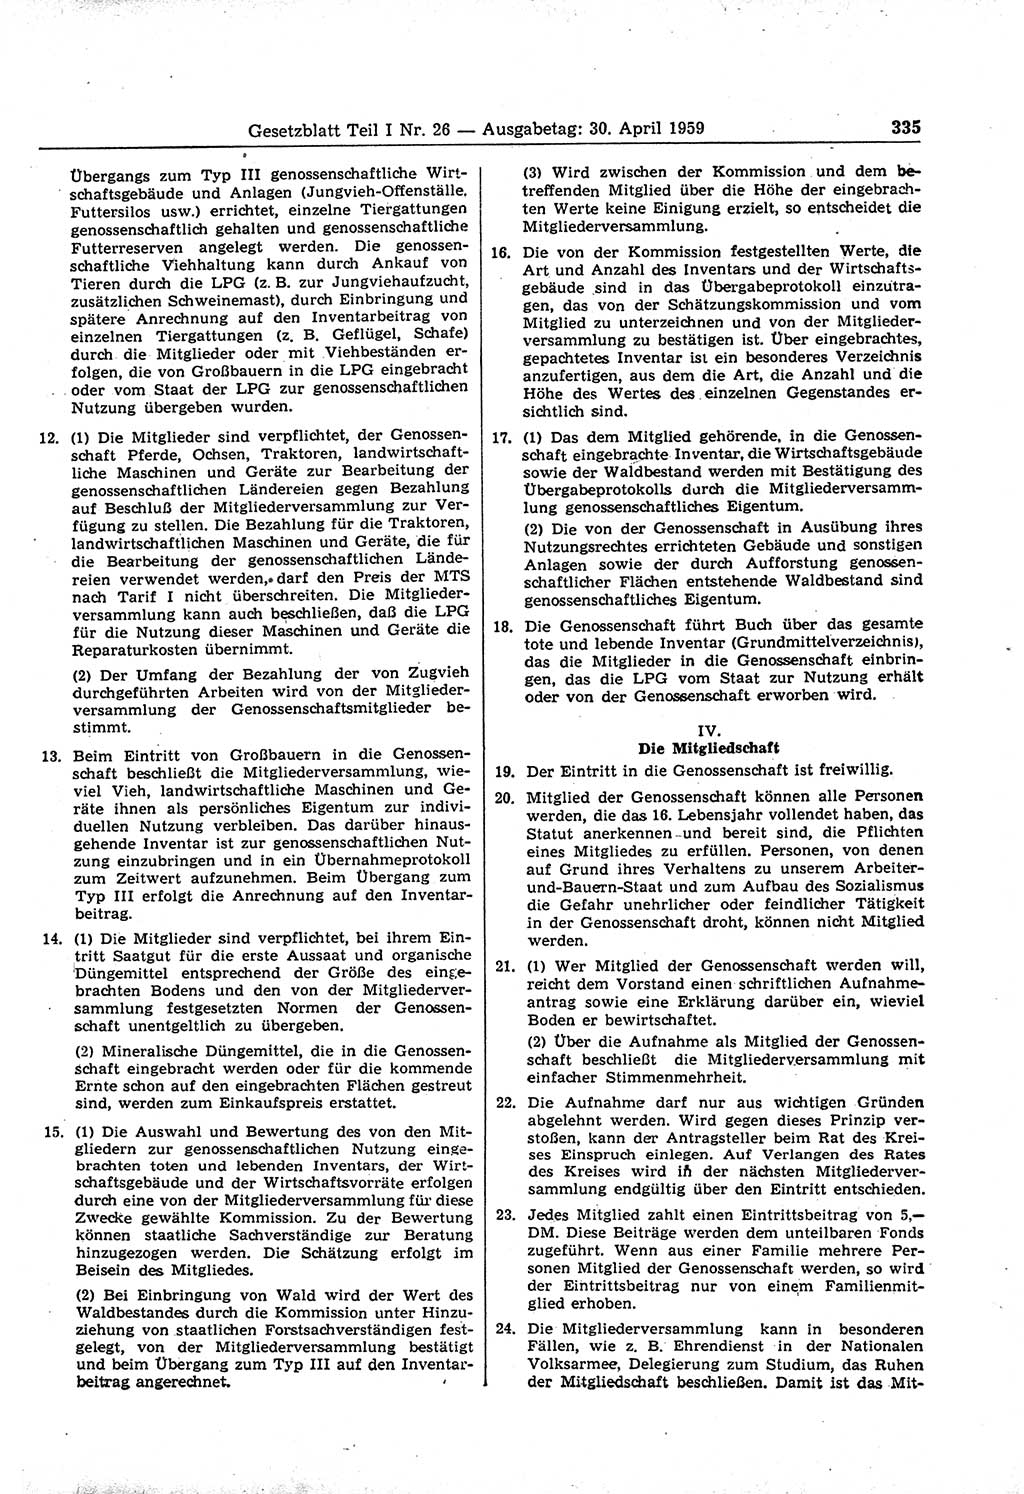 Gesetzblatt (GBl.) der Deutschen Demokratischen Republik (DDR) Teil Ⅰ 1959, Seite 335 (GBl. DDR Ⅰ 1959, S. 335)